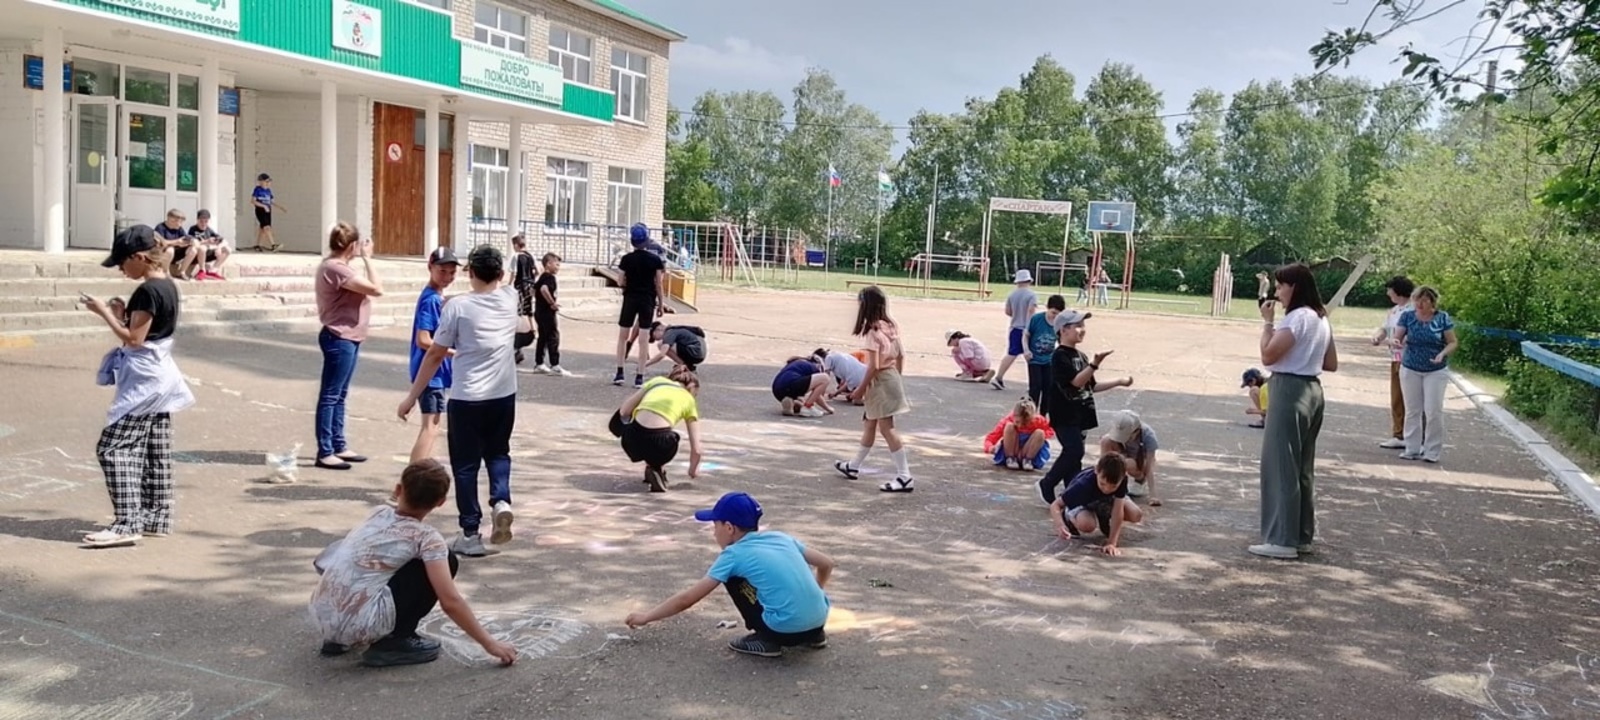 В Краснокамском районе будут сохранены все формы детского отдыха